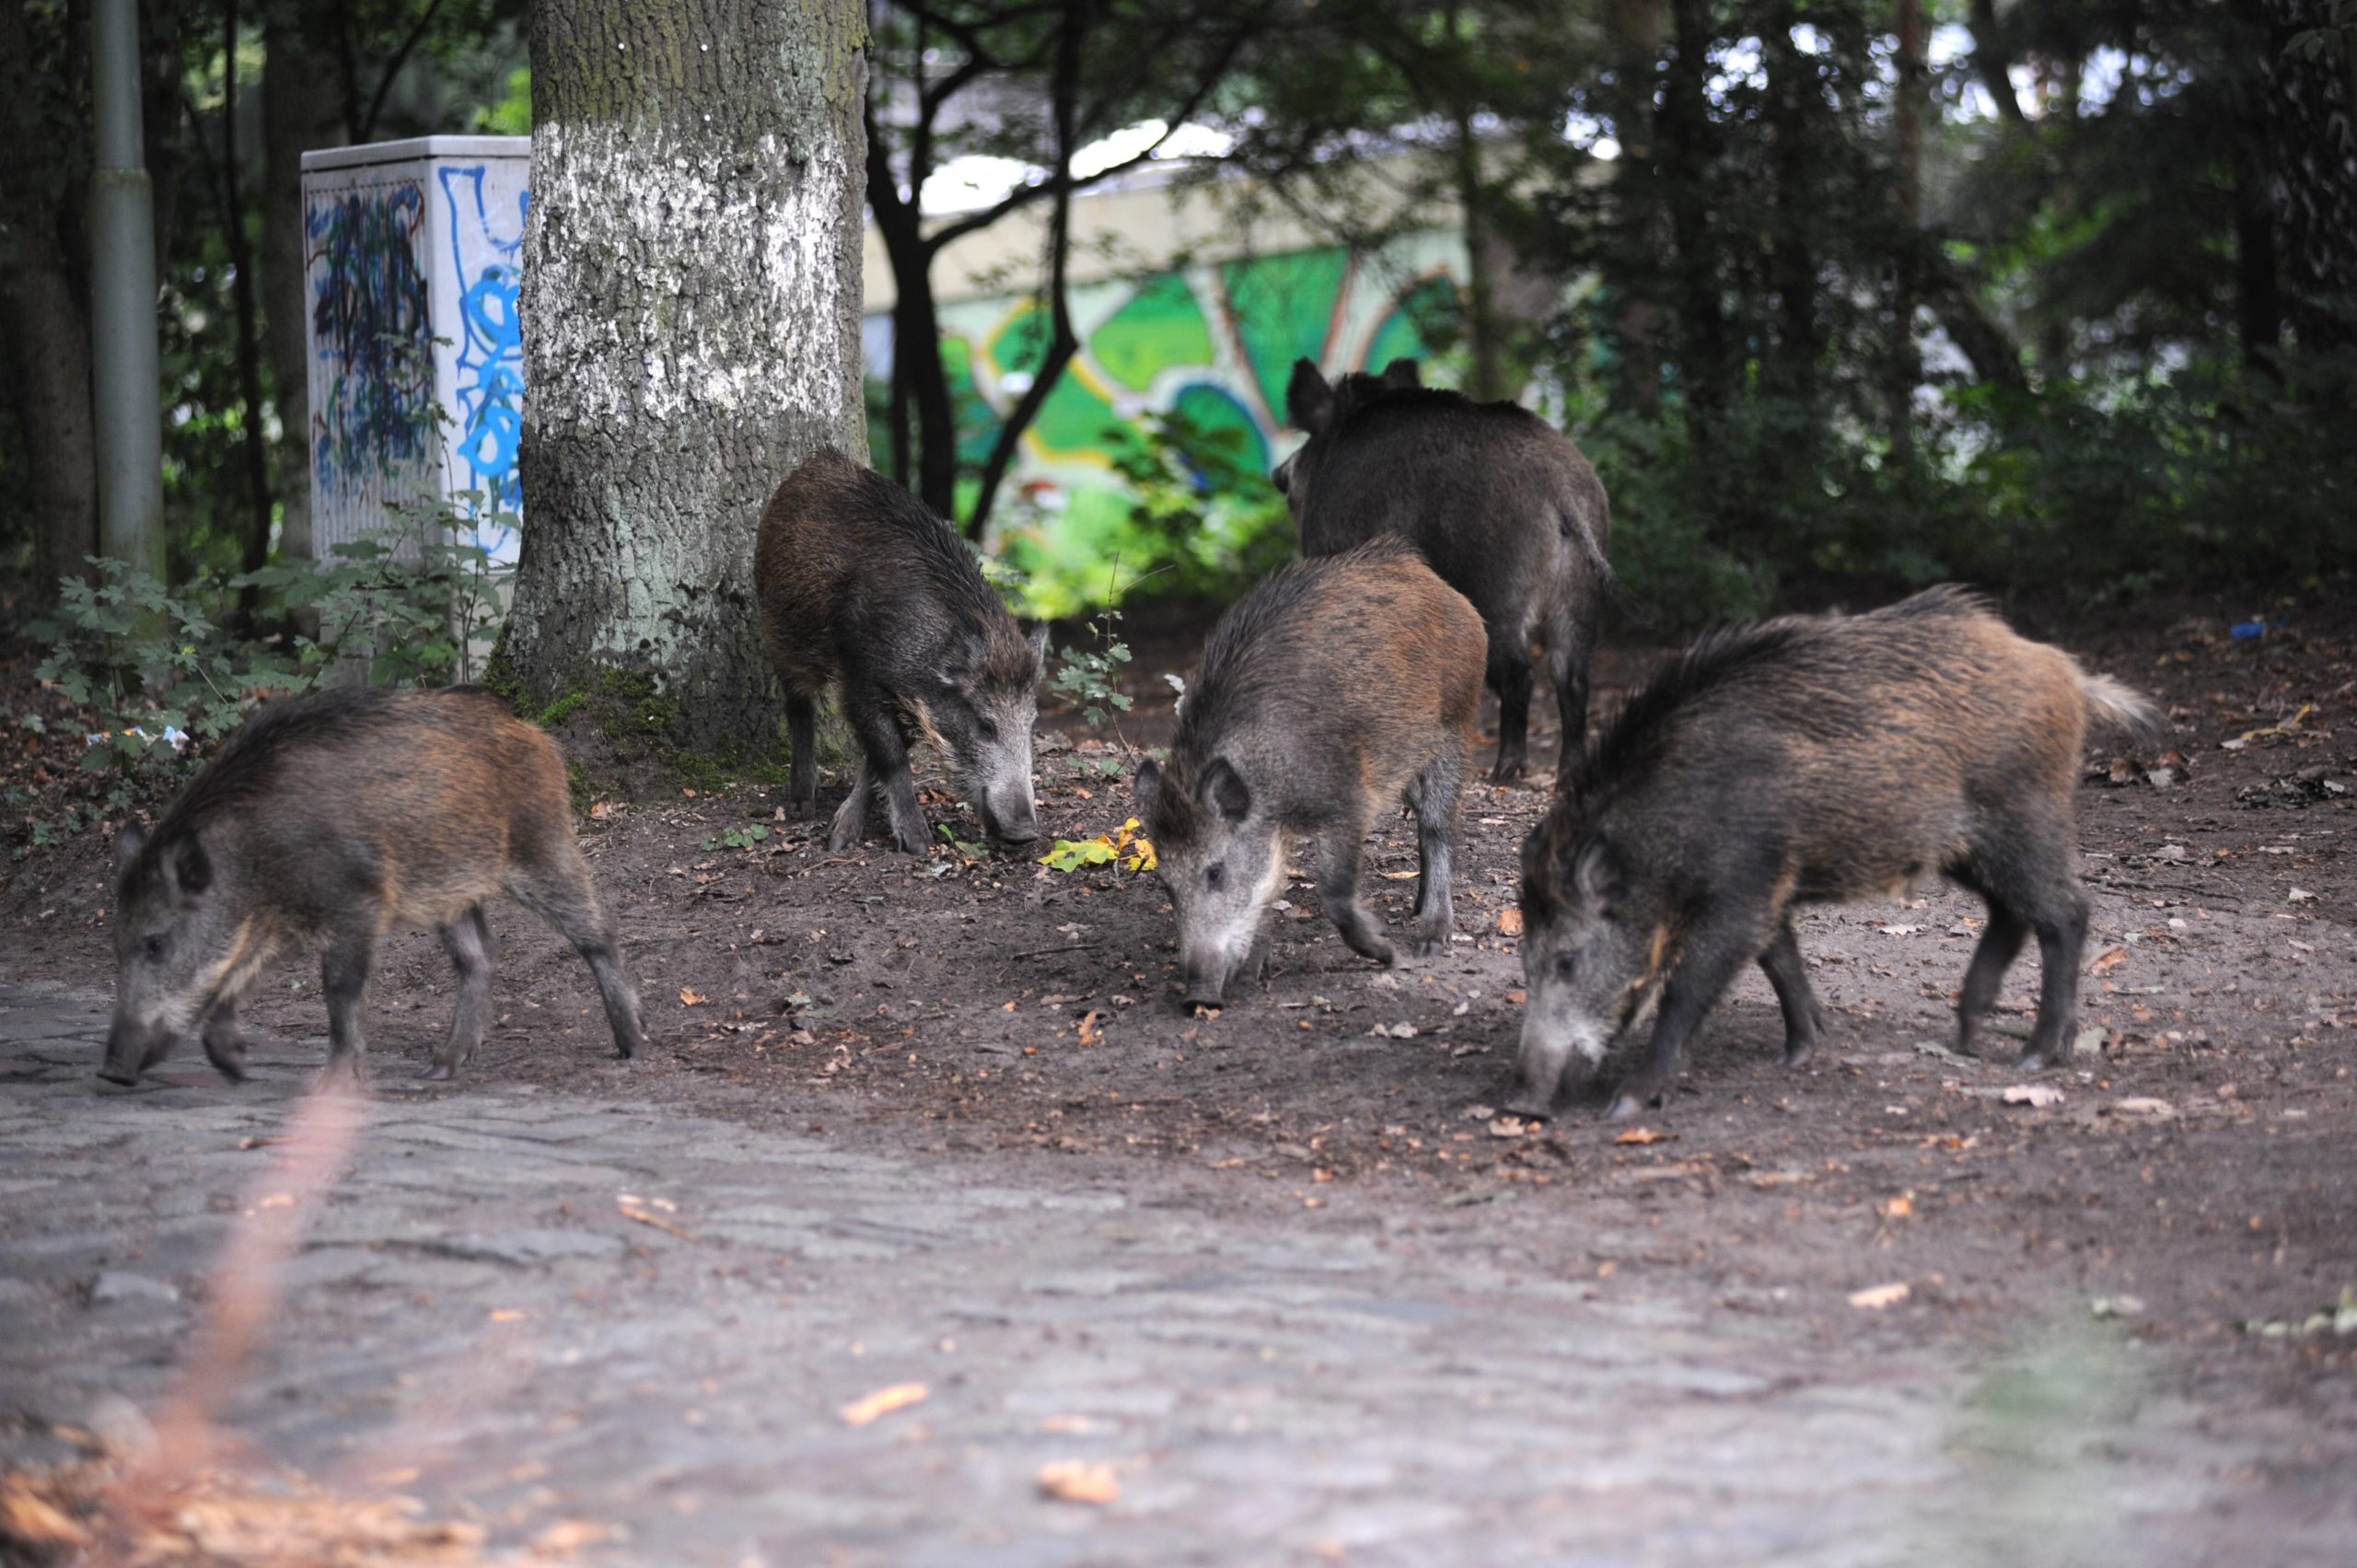 Wildschweine streifen durch eine Wohngegend in Reinickendorf. Foto: Imago/Petra Schneider